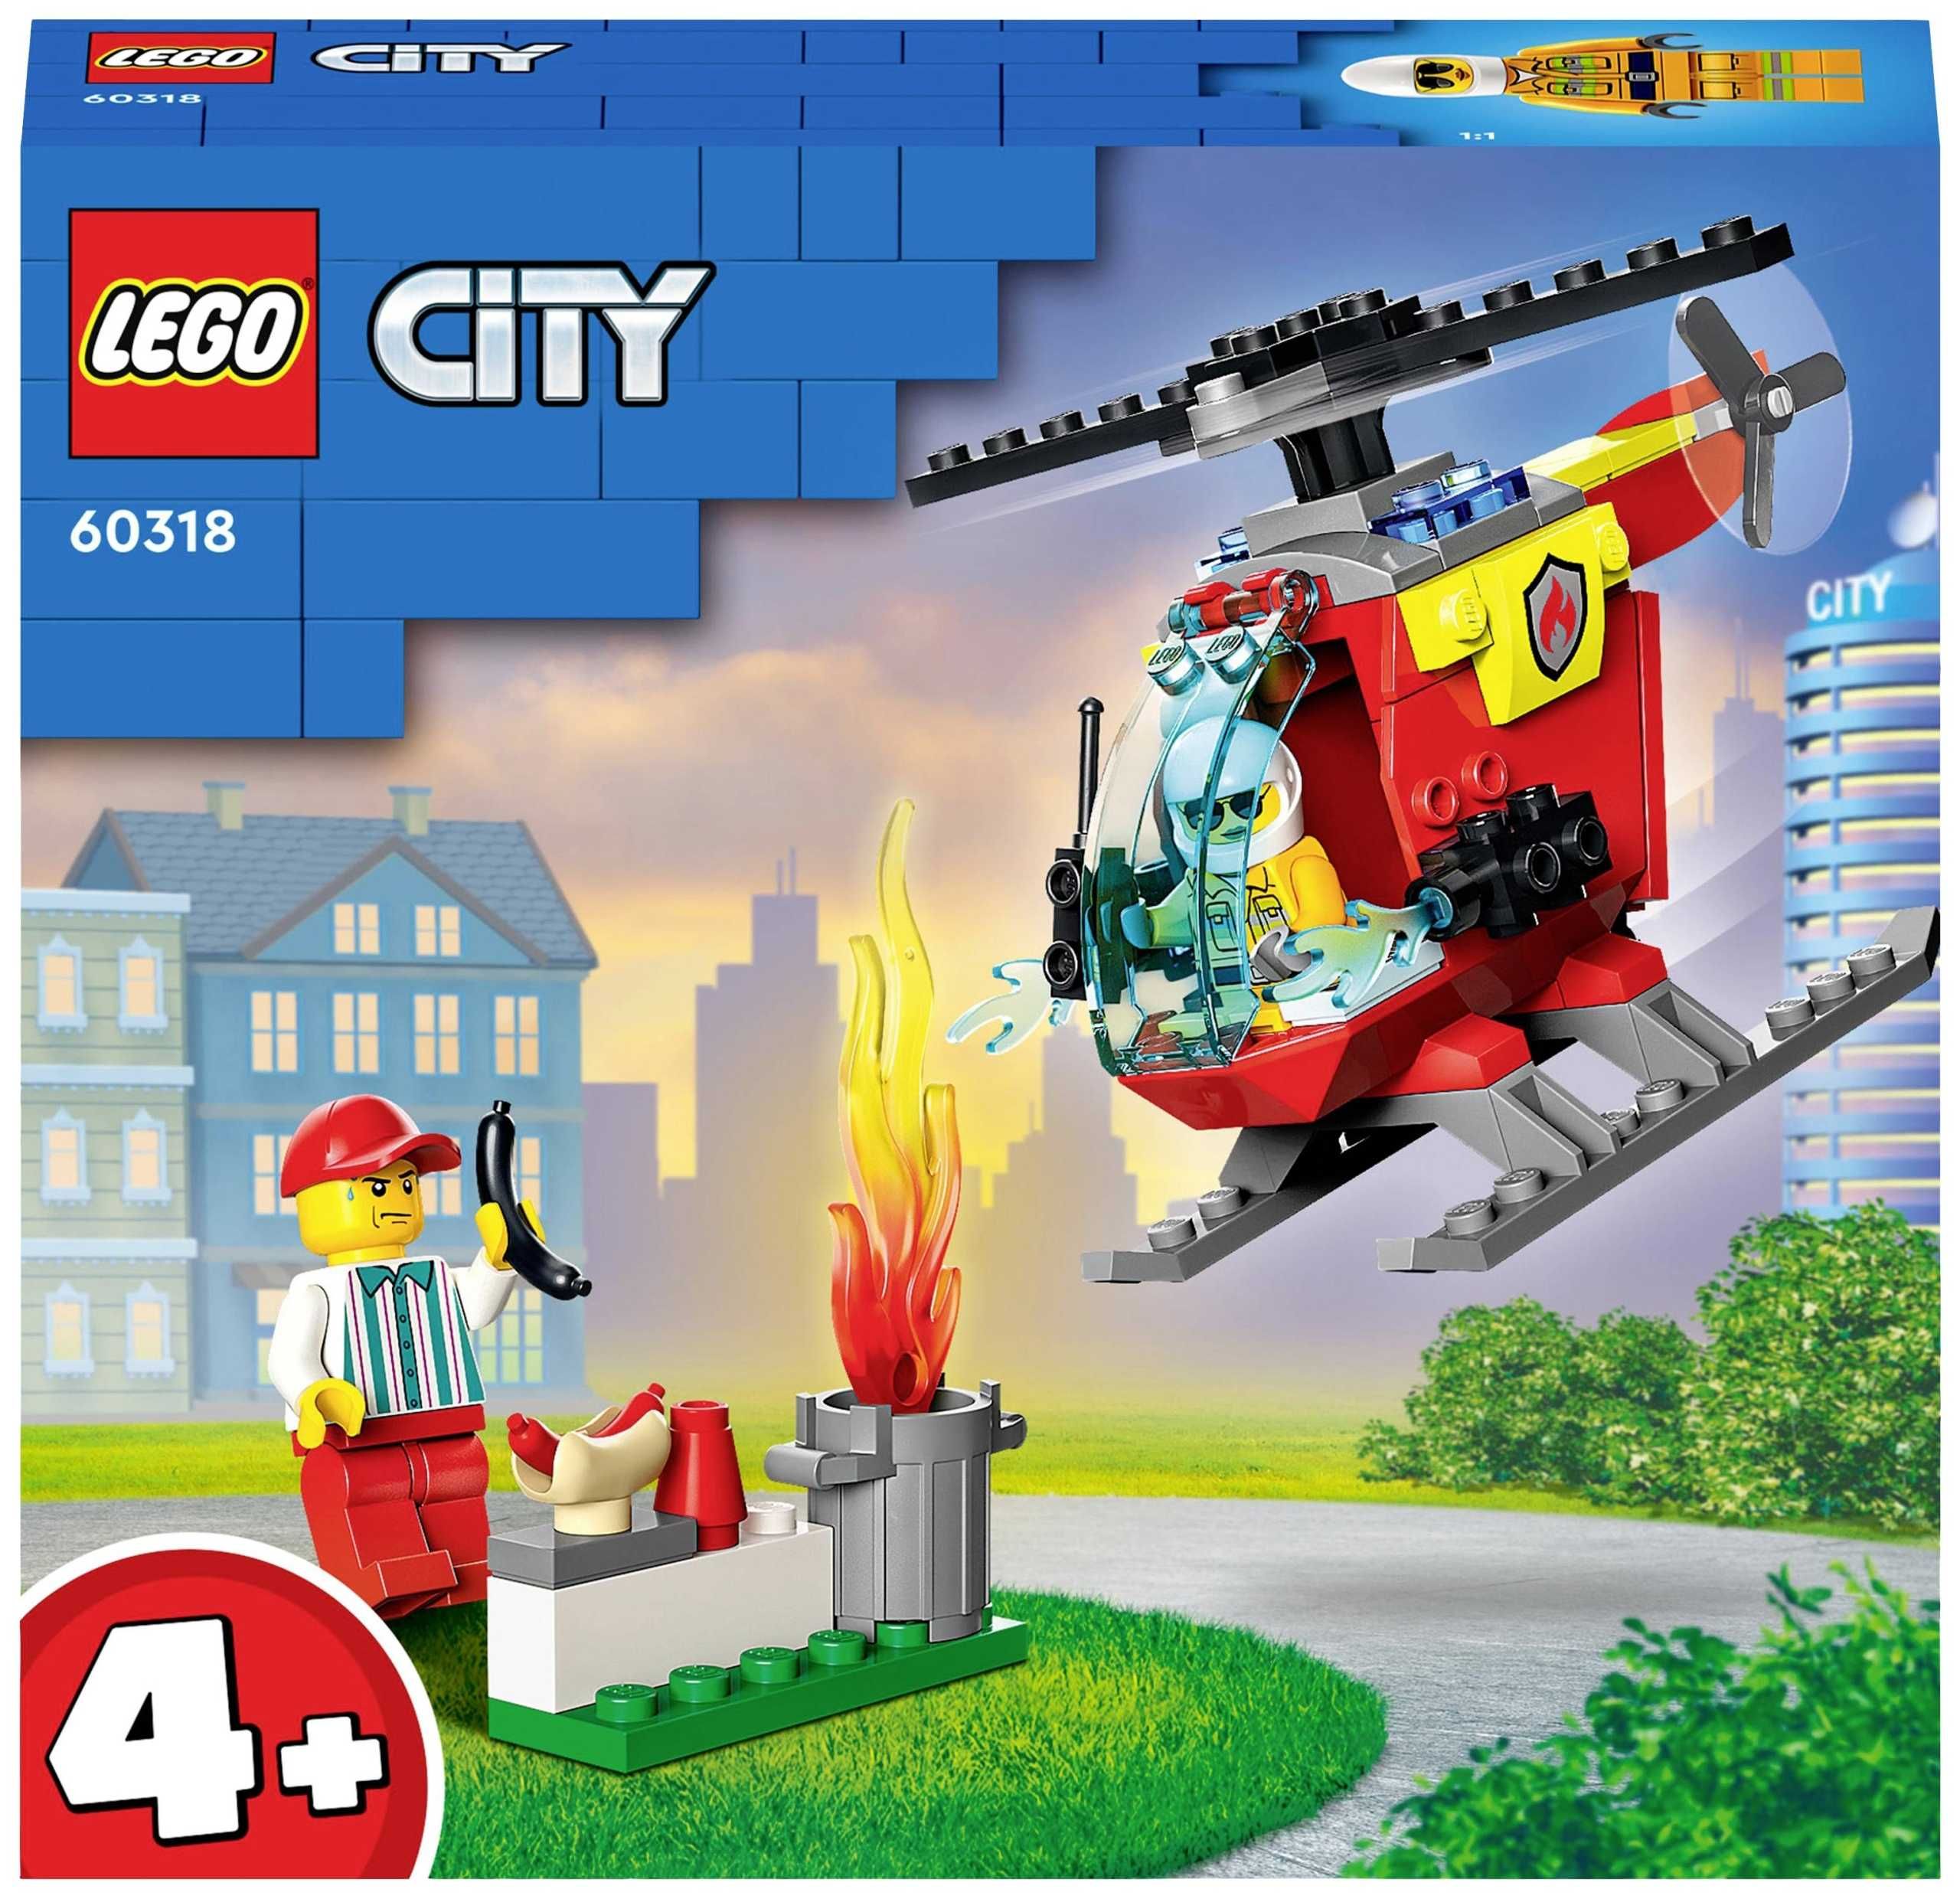 LEGO CITY 60318 Helikopter Straży Pożarnej 4+ Klocki *NOWE*